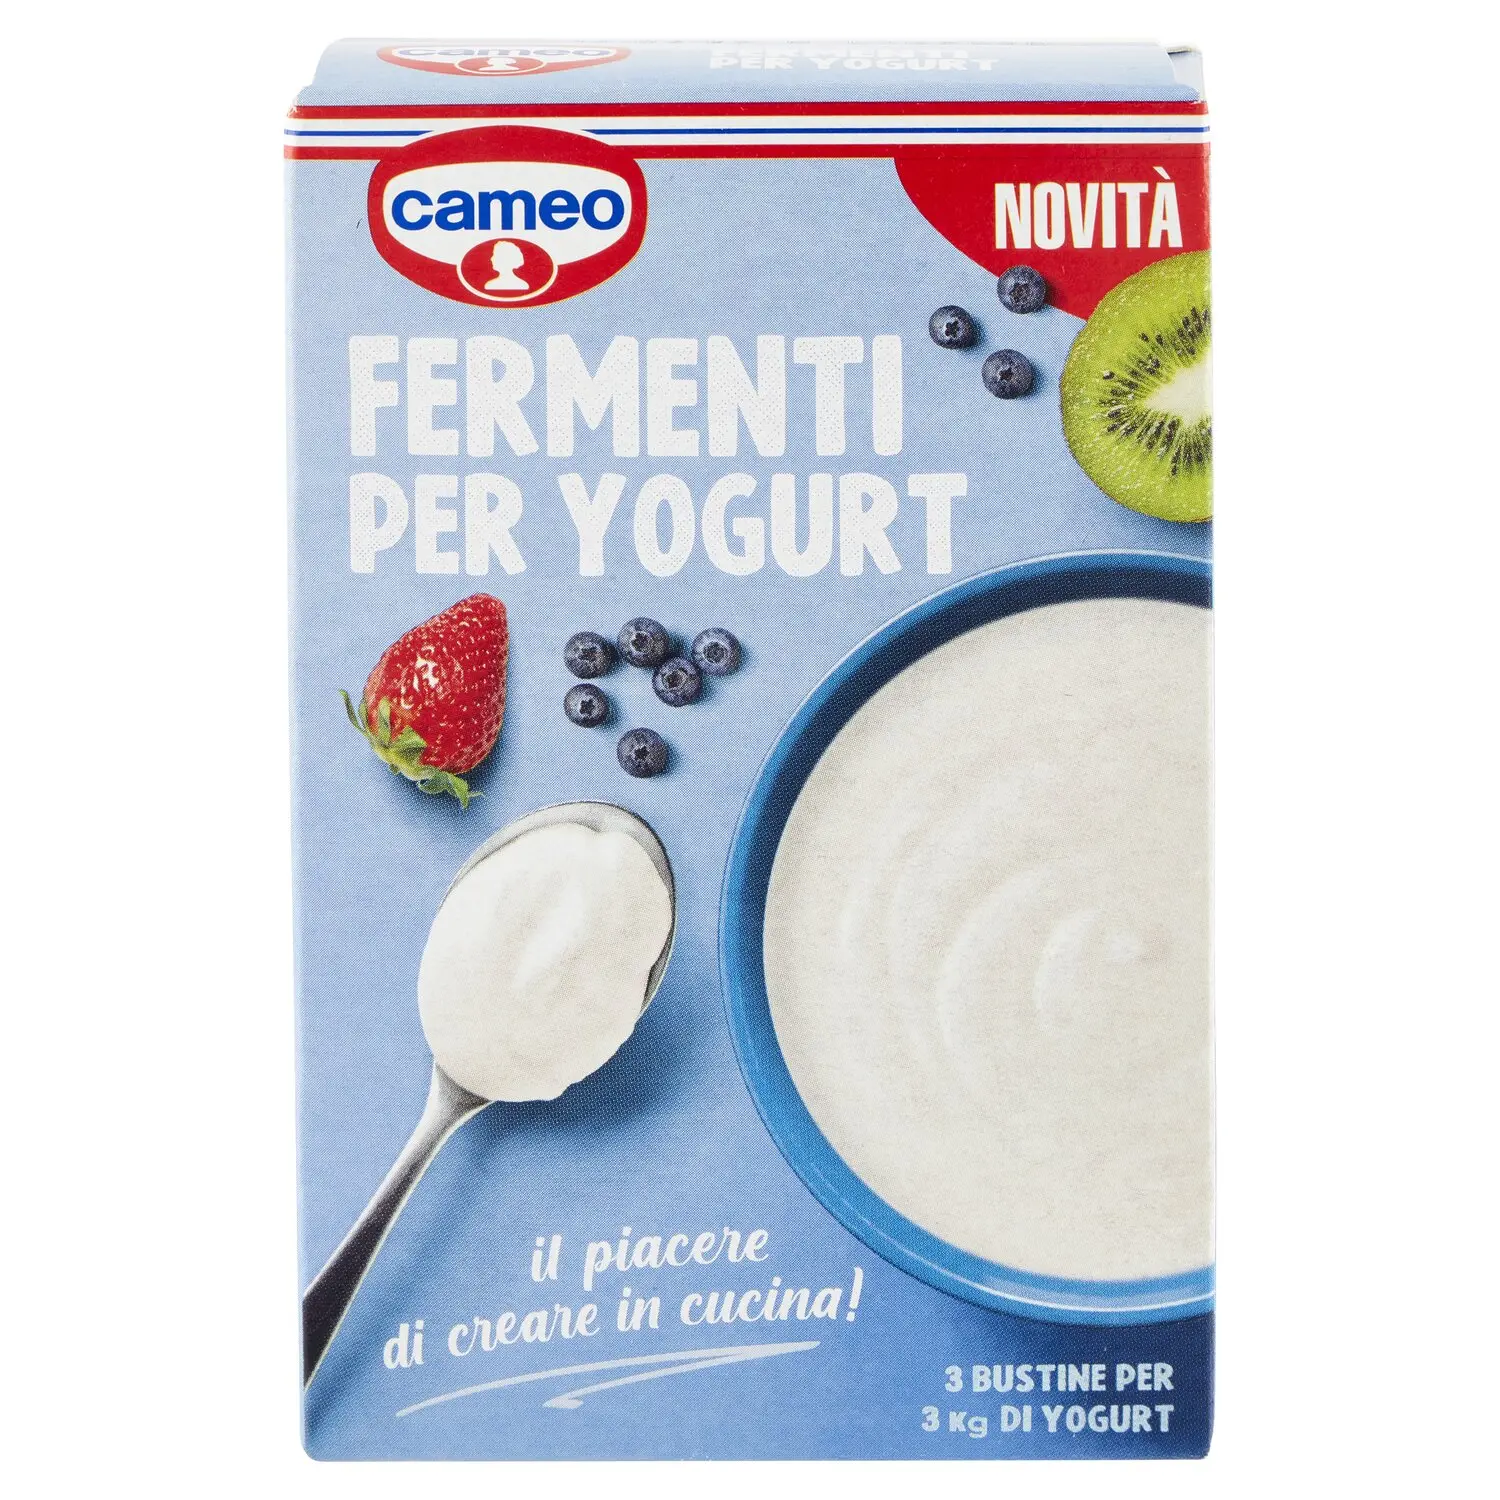 Cameo lancia i fermenti per fare lo yogurt in casa con o senza yogurtiera